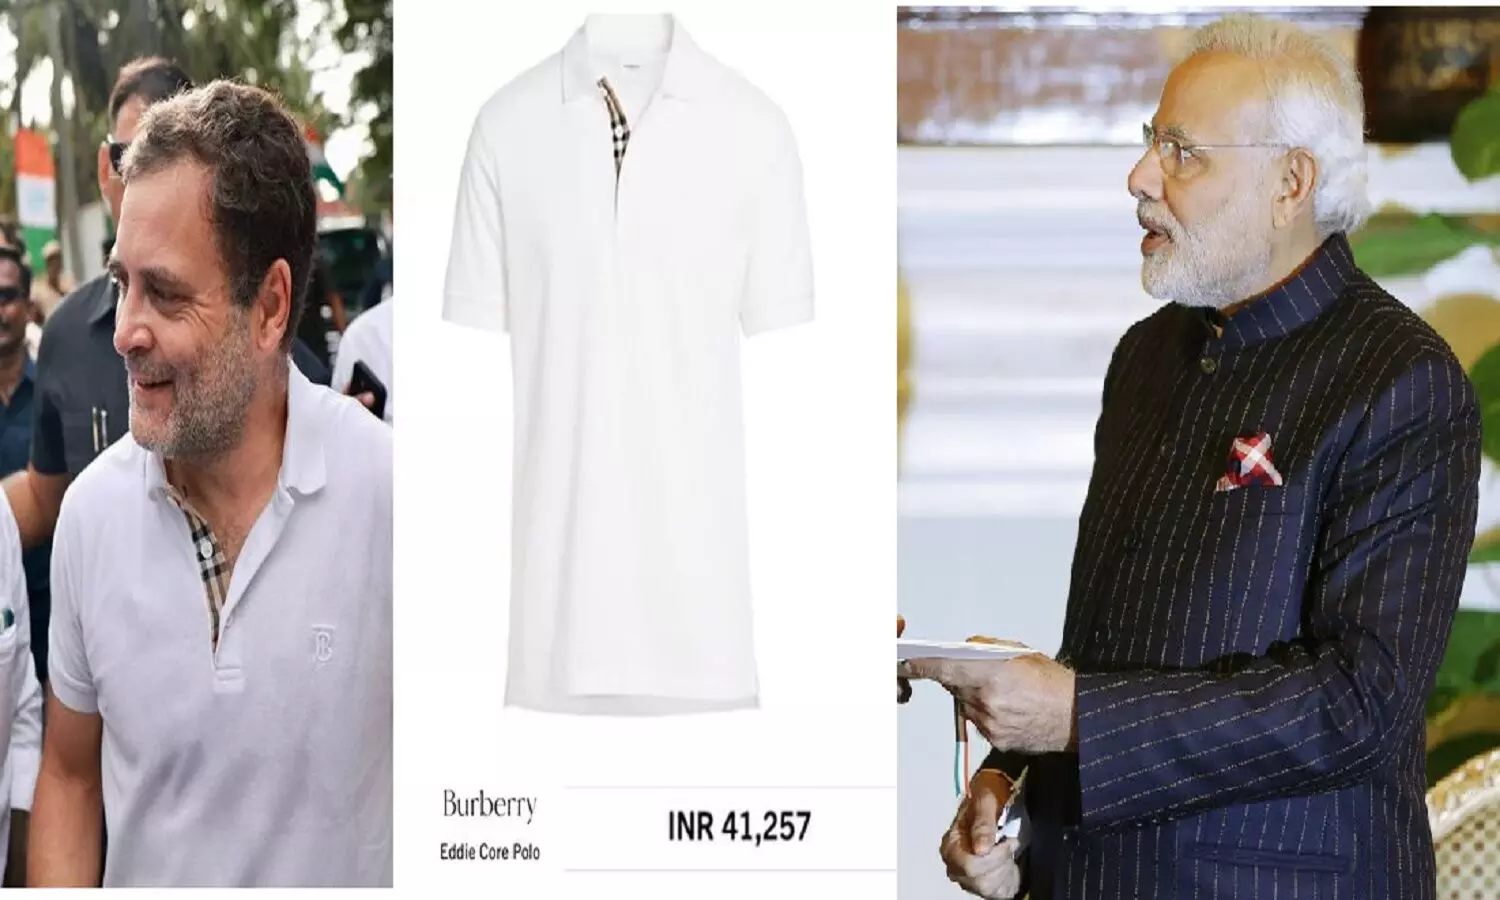 राहुल गांधी की 41 हज़ार वाली टी शर्ट पर बीजेपी ने किया कॉमेंट तो कांग्रेस ने पीएम का 10 लाख वाला सूट गिना दिया